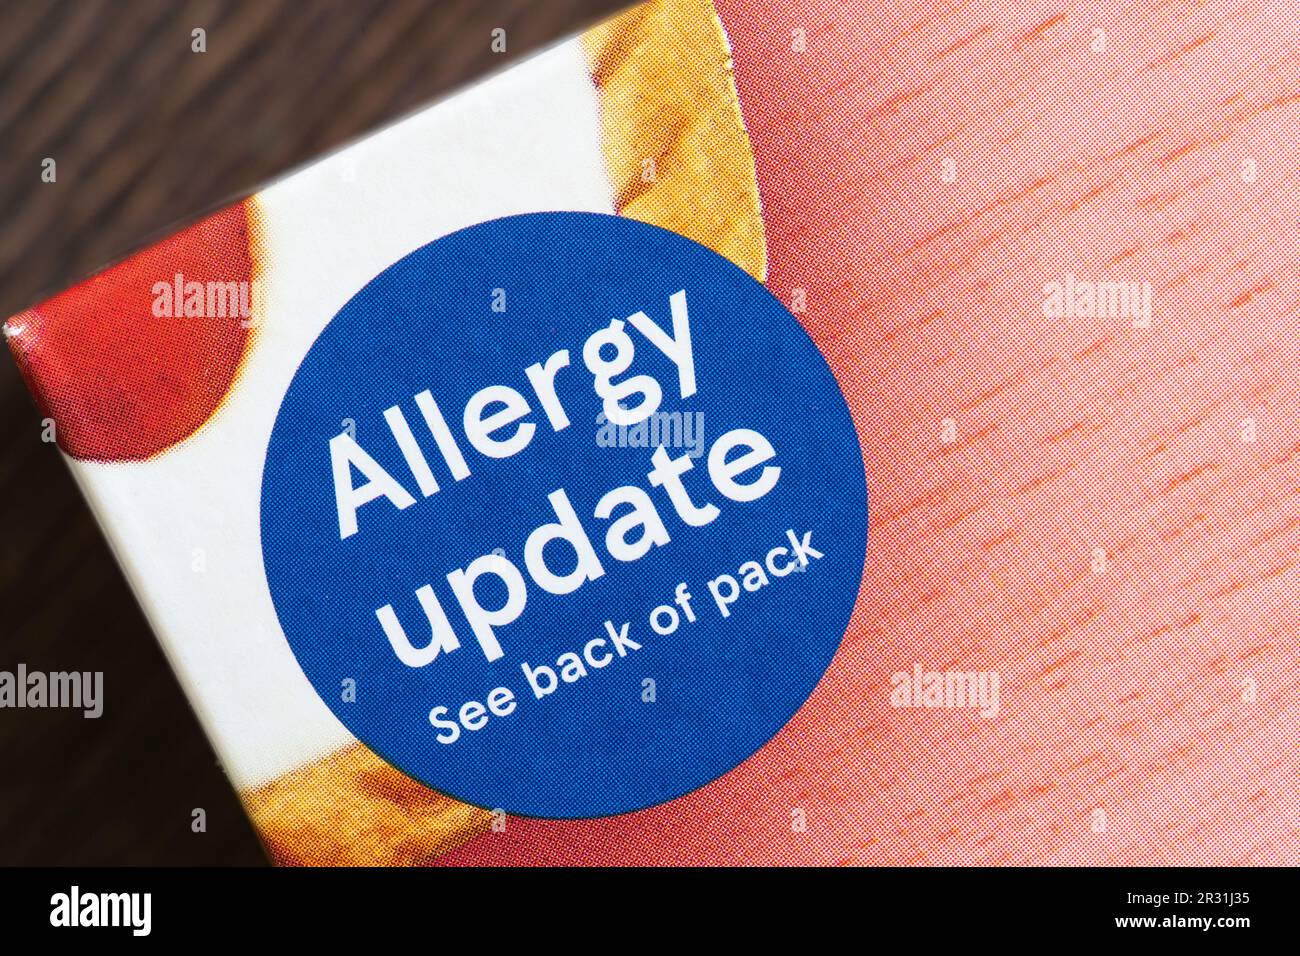 Allergie-Update-Etikett auf Tesco Eigenmarke Cherry bakewell Tarts Packet, England. Konzept: Lebensmittelallergien, allergieauslösende Lebensmittel, allergische Reaktionen Stockfoto